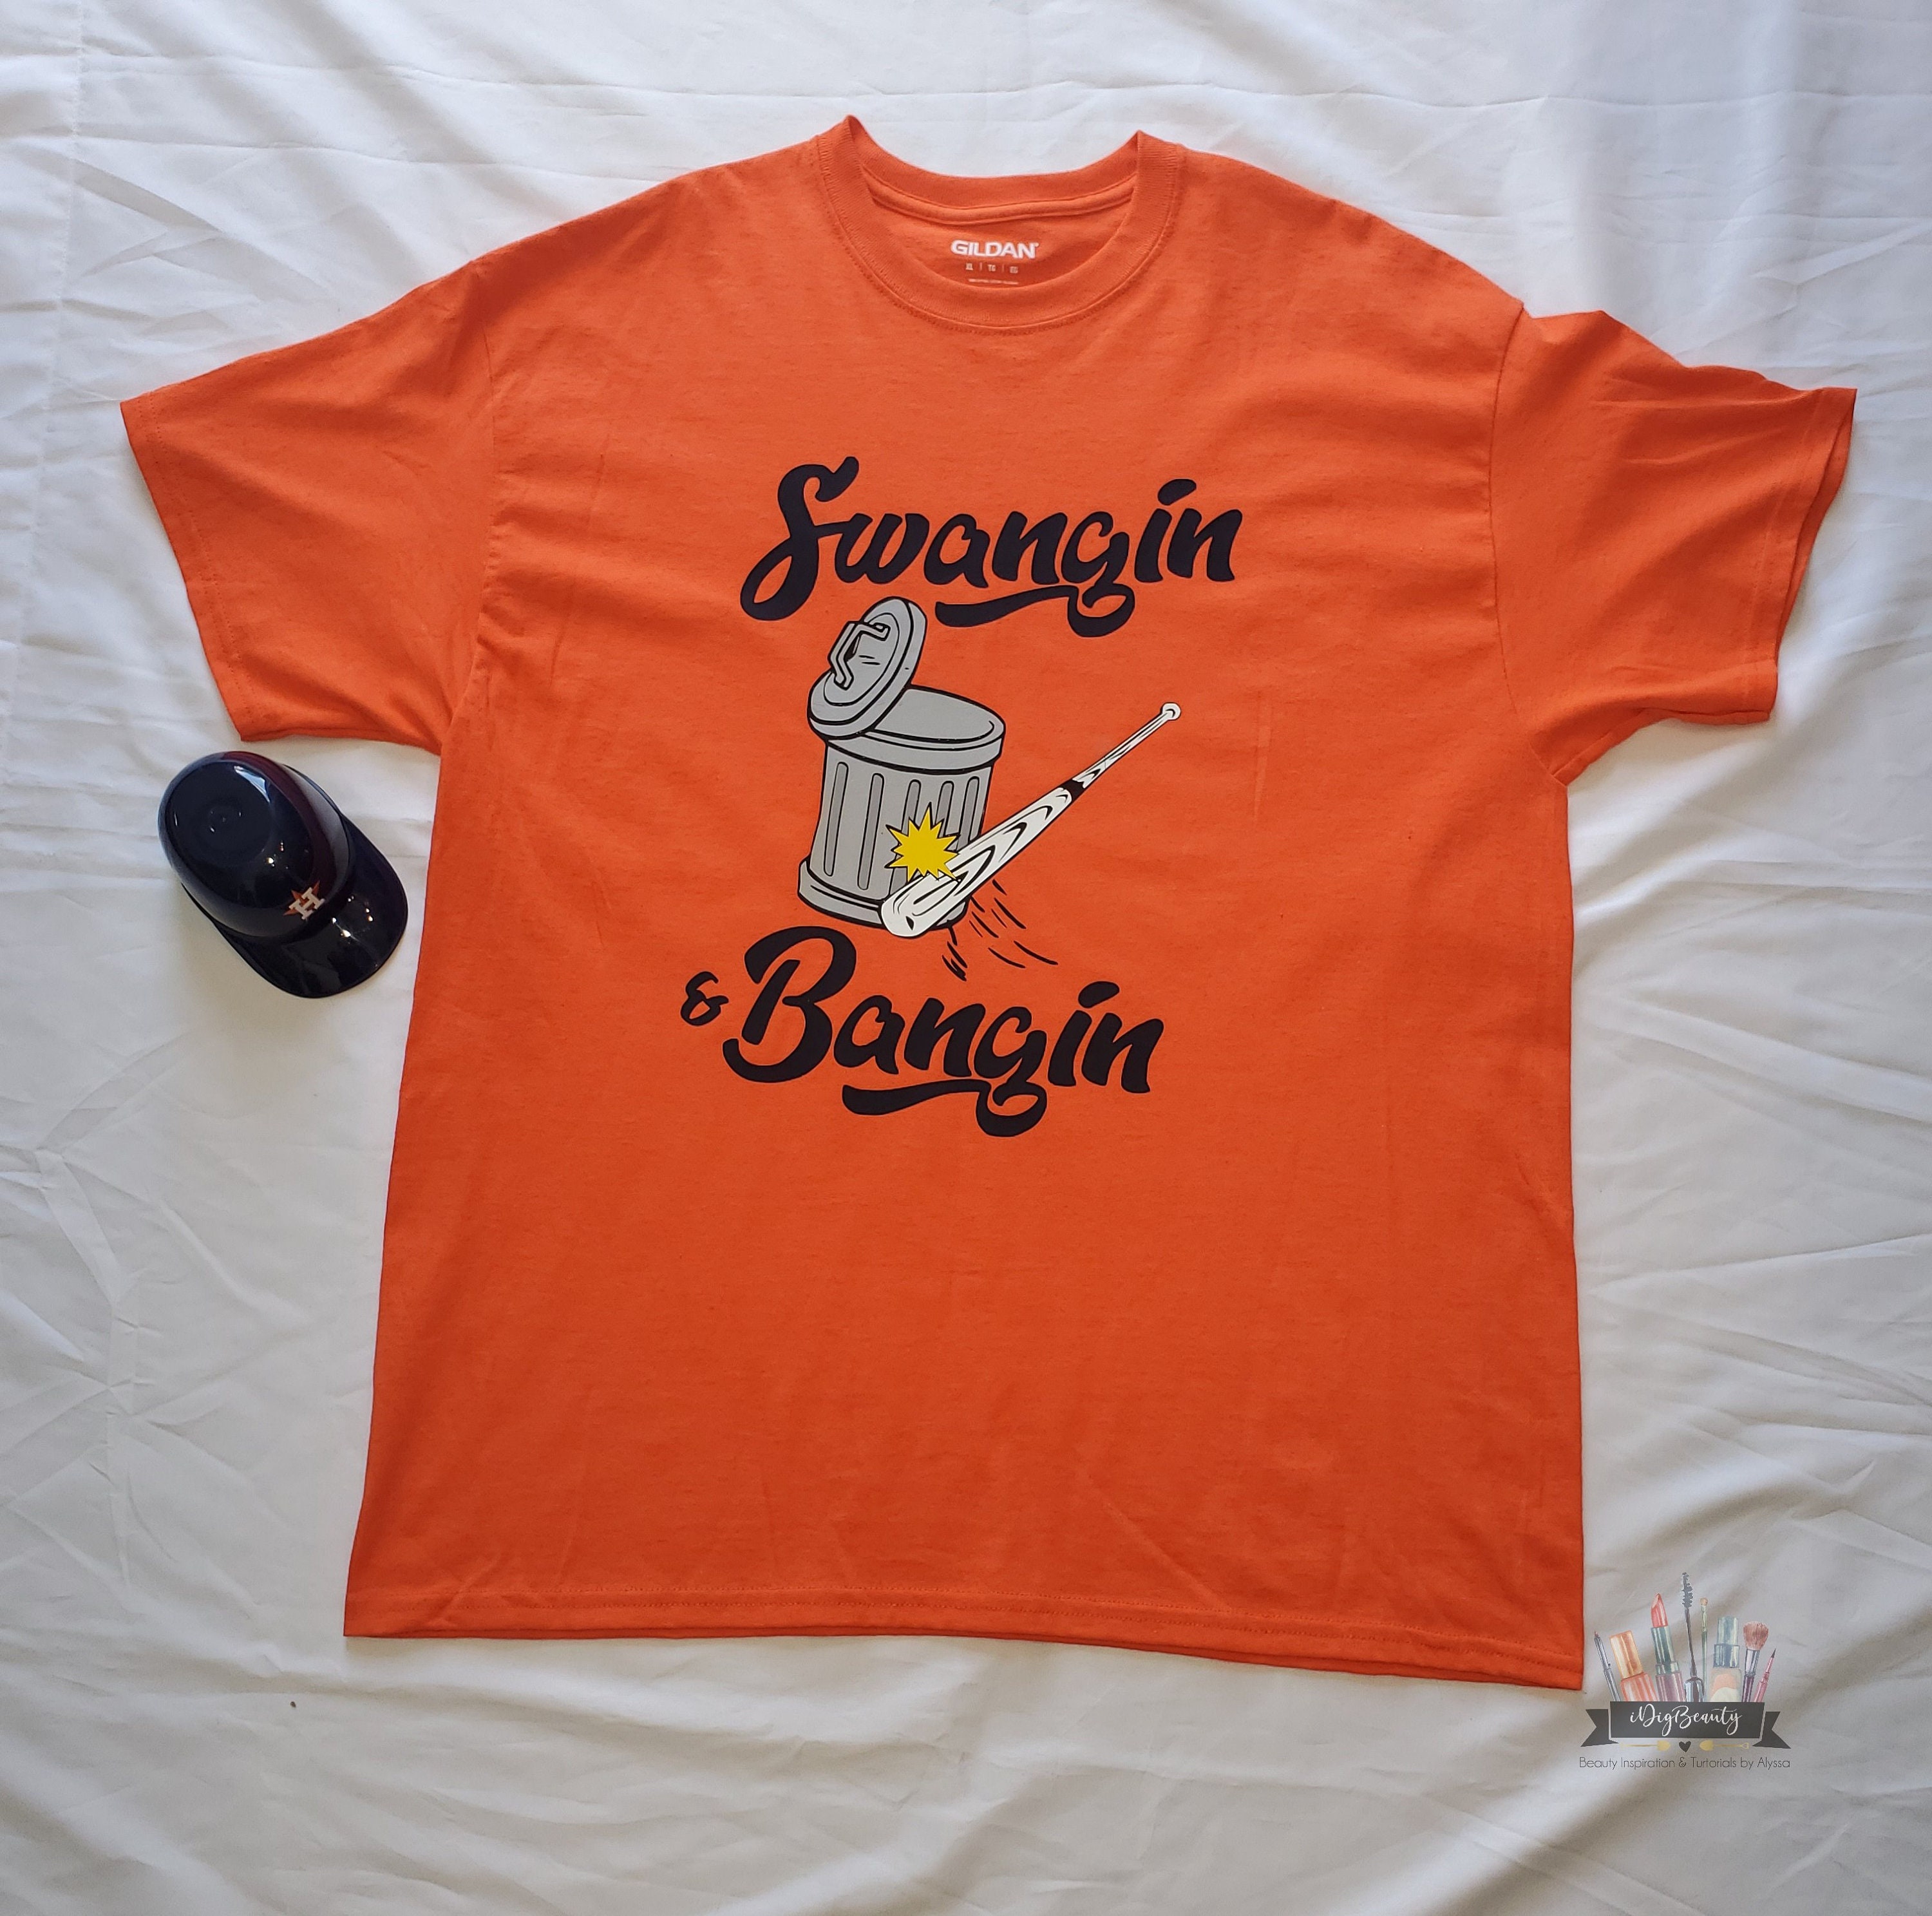 Swangin & Bangin T-shirt Houston Baseball Graphic Tee 